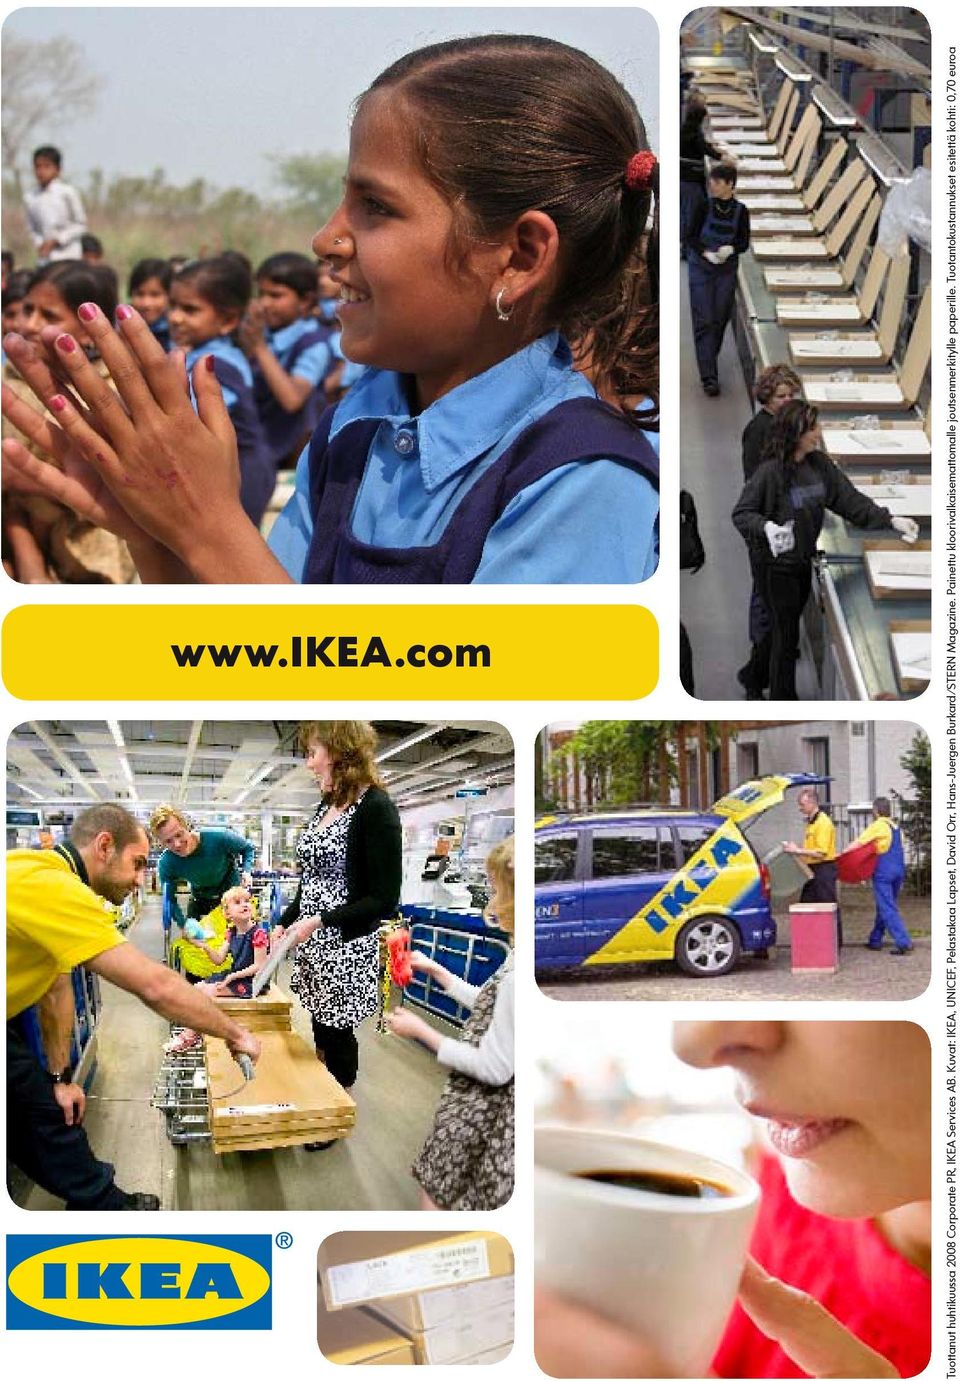 Kuvat: IKEA, UNICEF, Pelastakaa Lapset, David Orr, Hans-Juergen